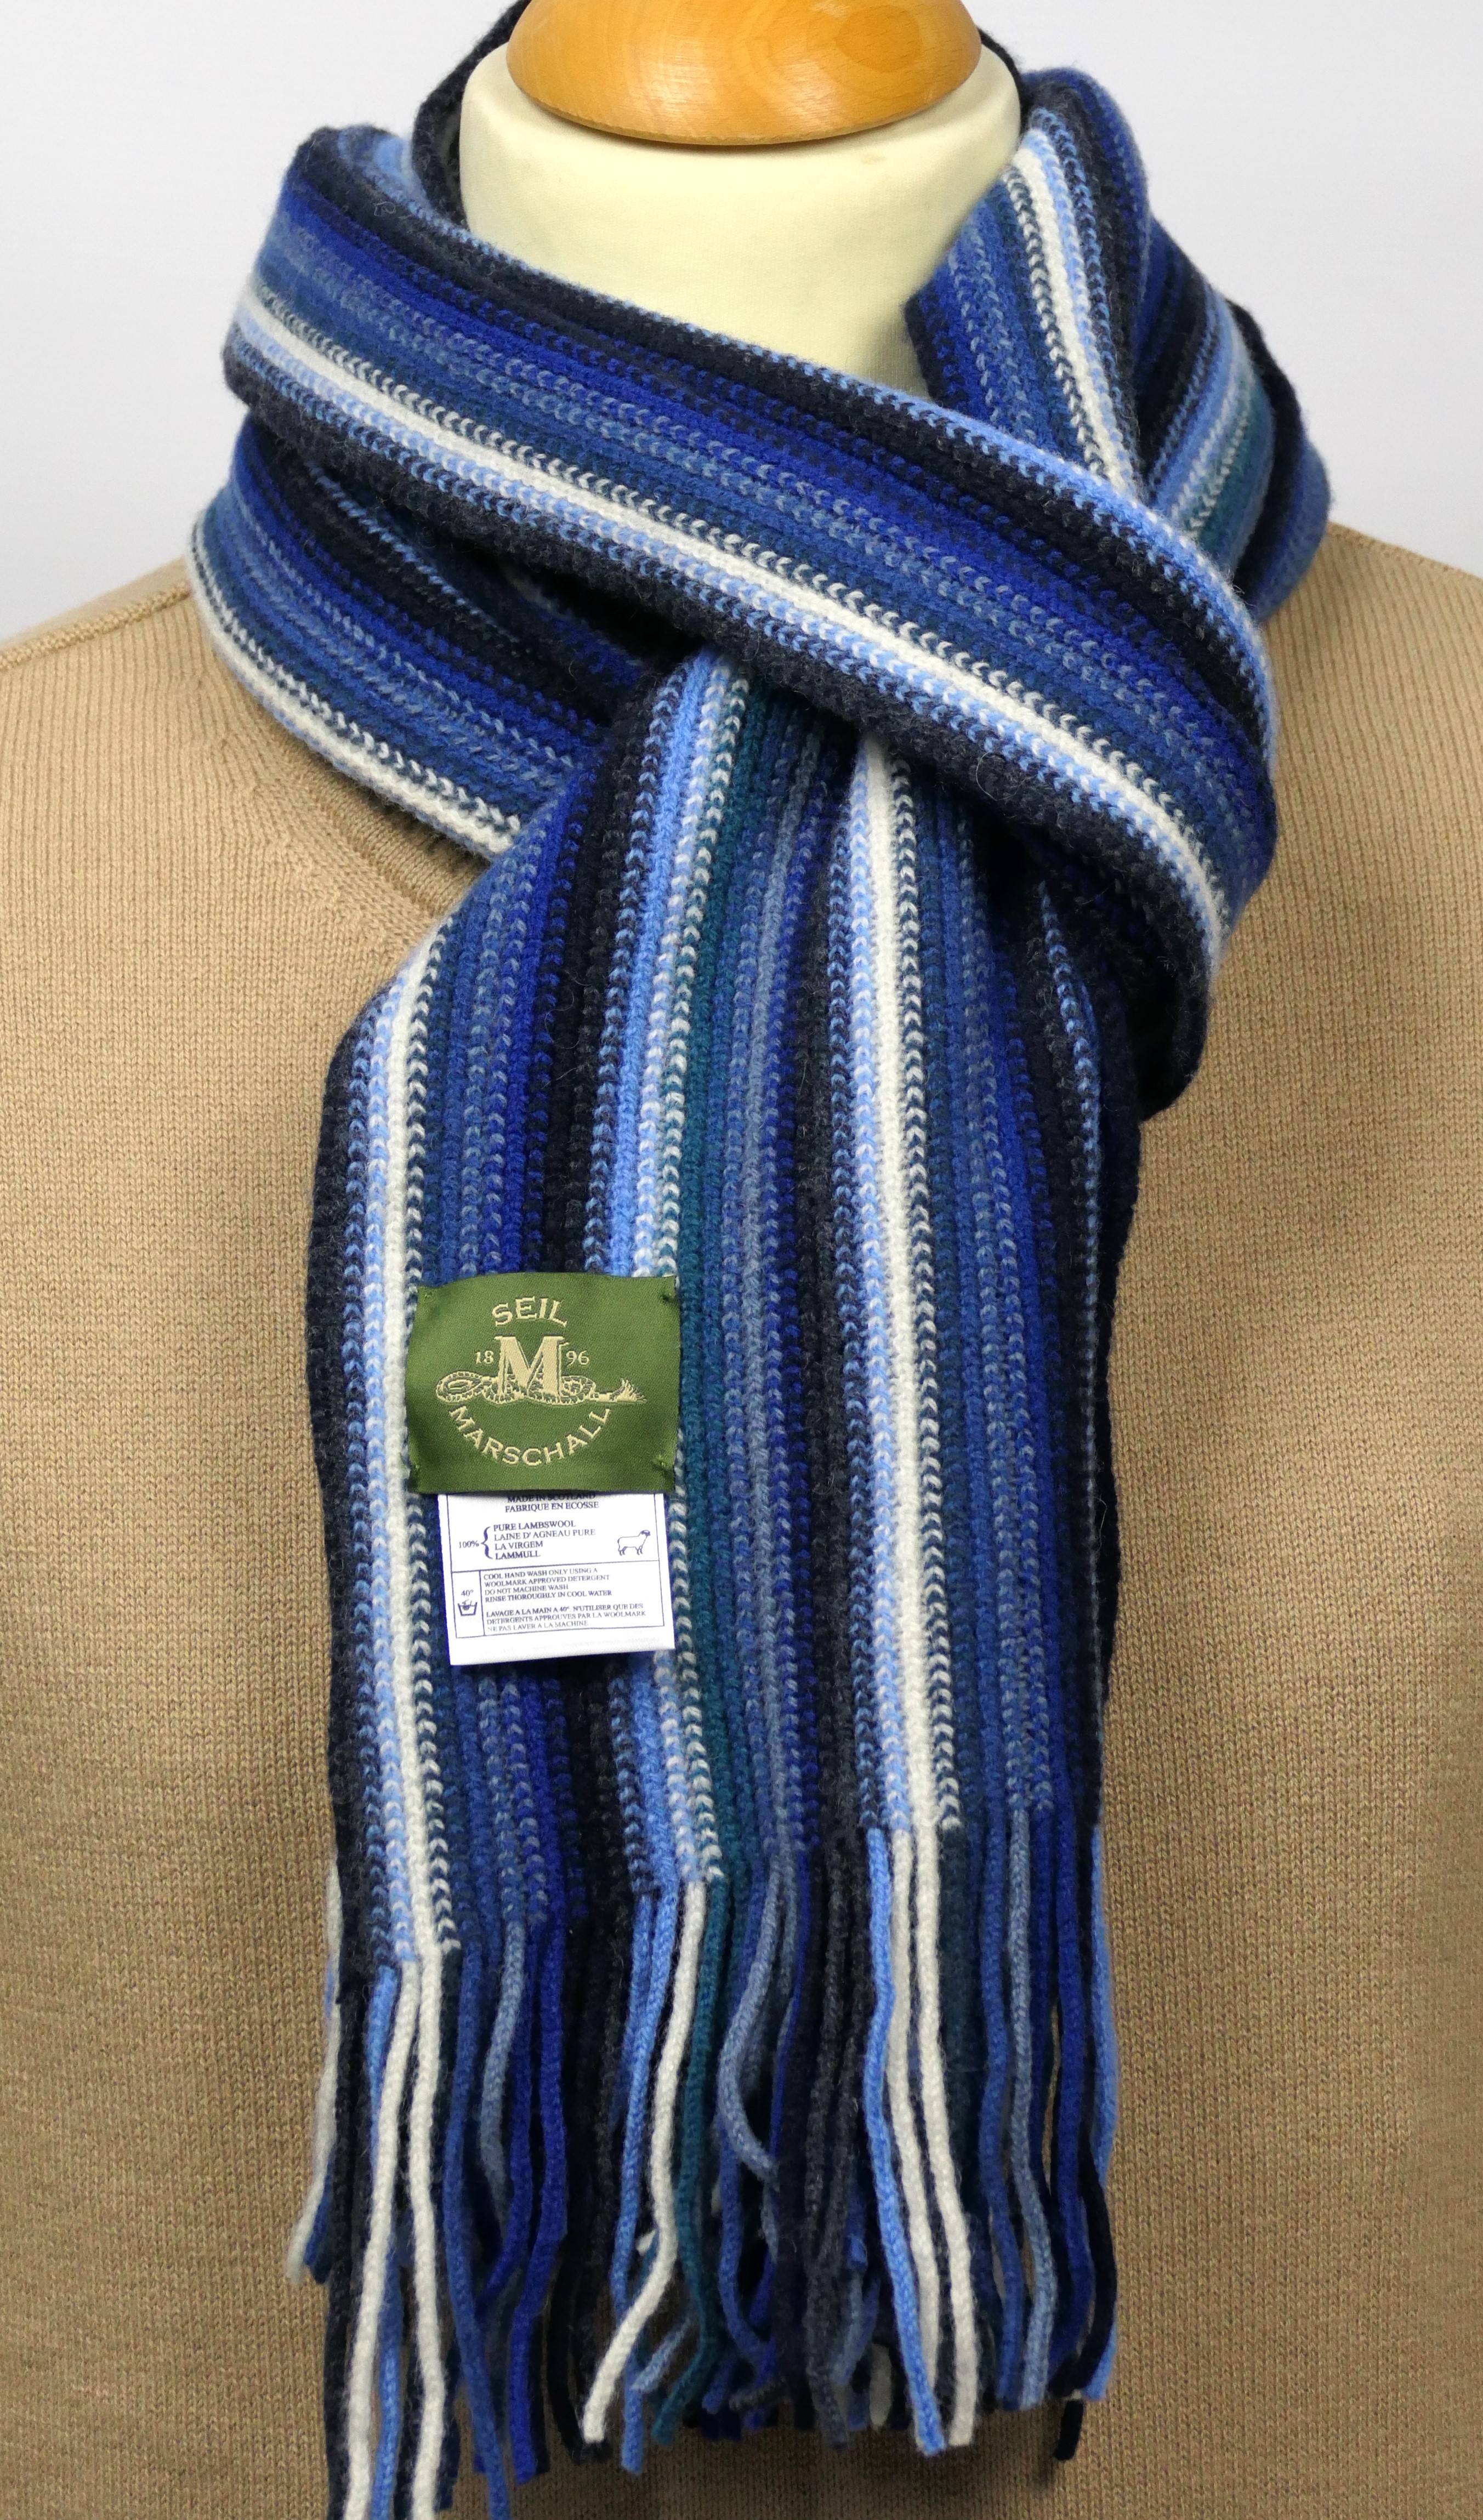 Woolscarf striped